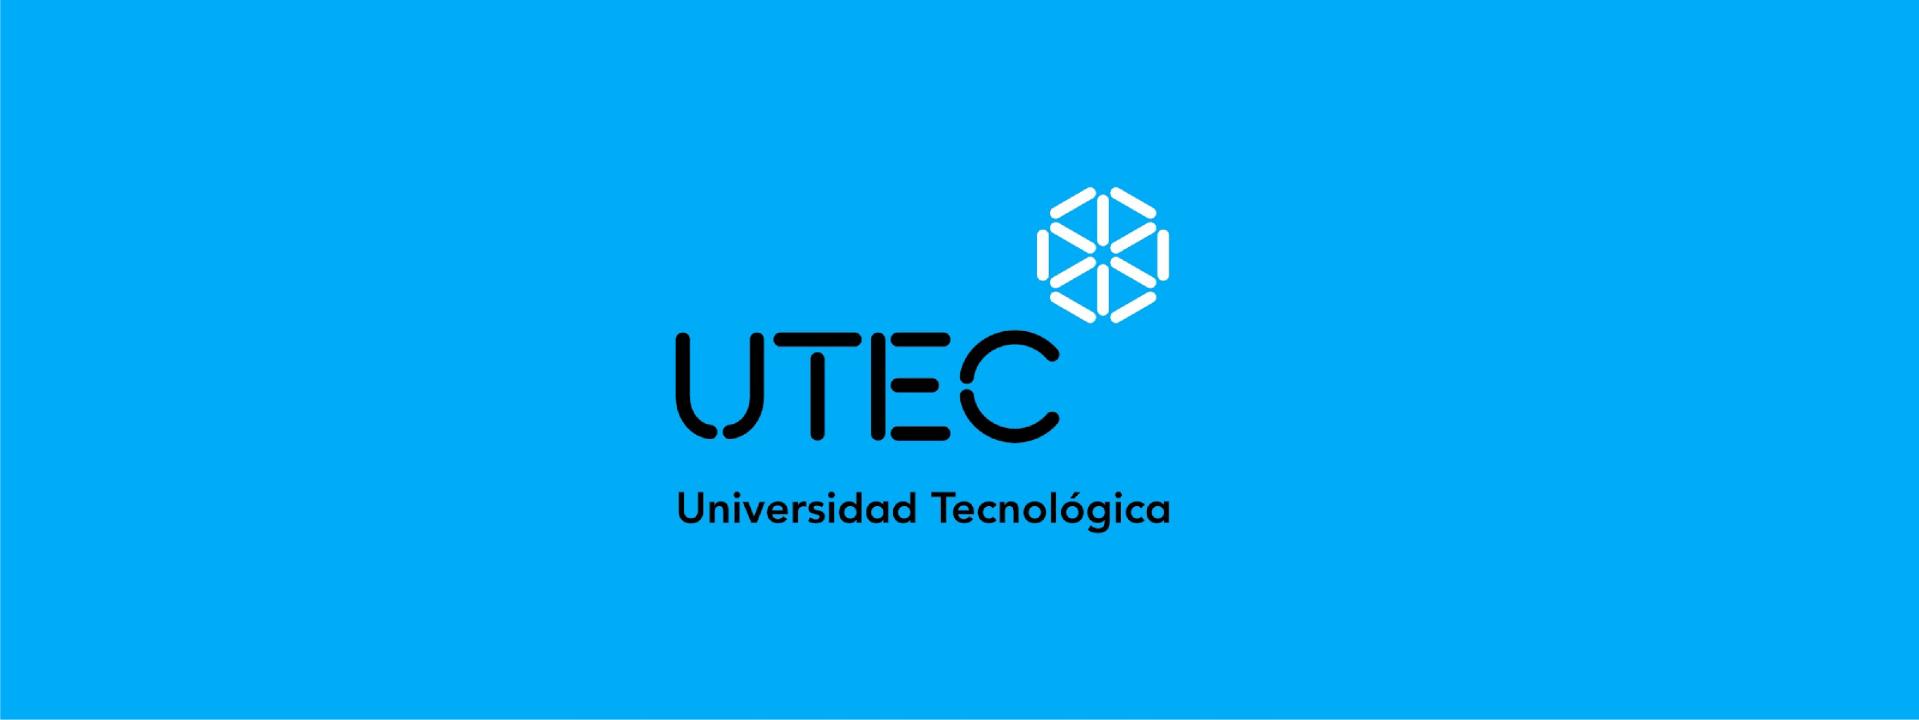 Visita de la Universidad Tecnológica de Uruguay (UTEC).